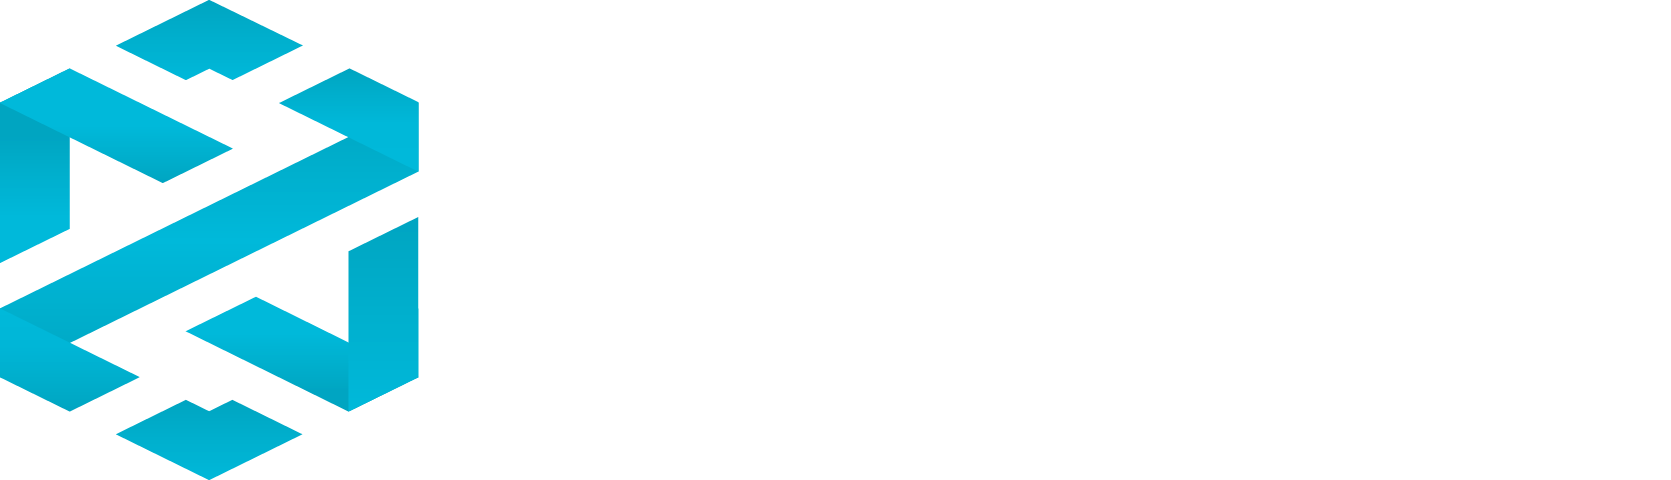 Dextools